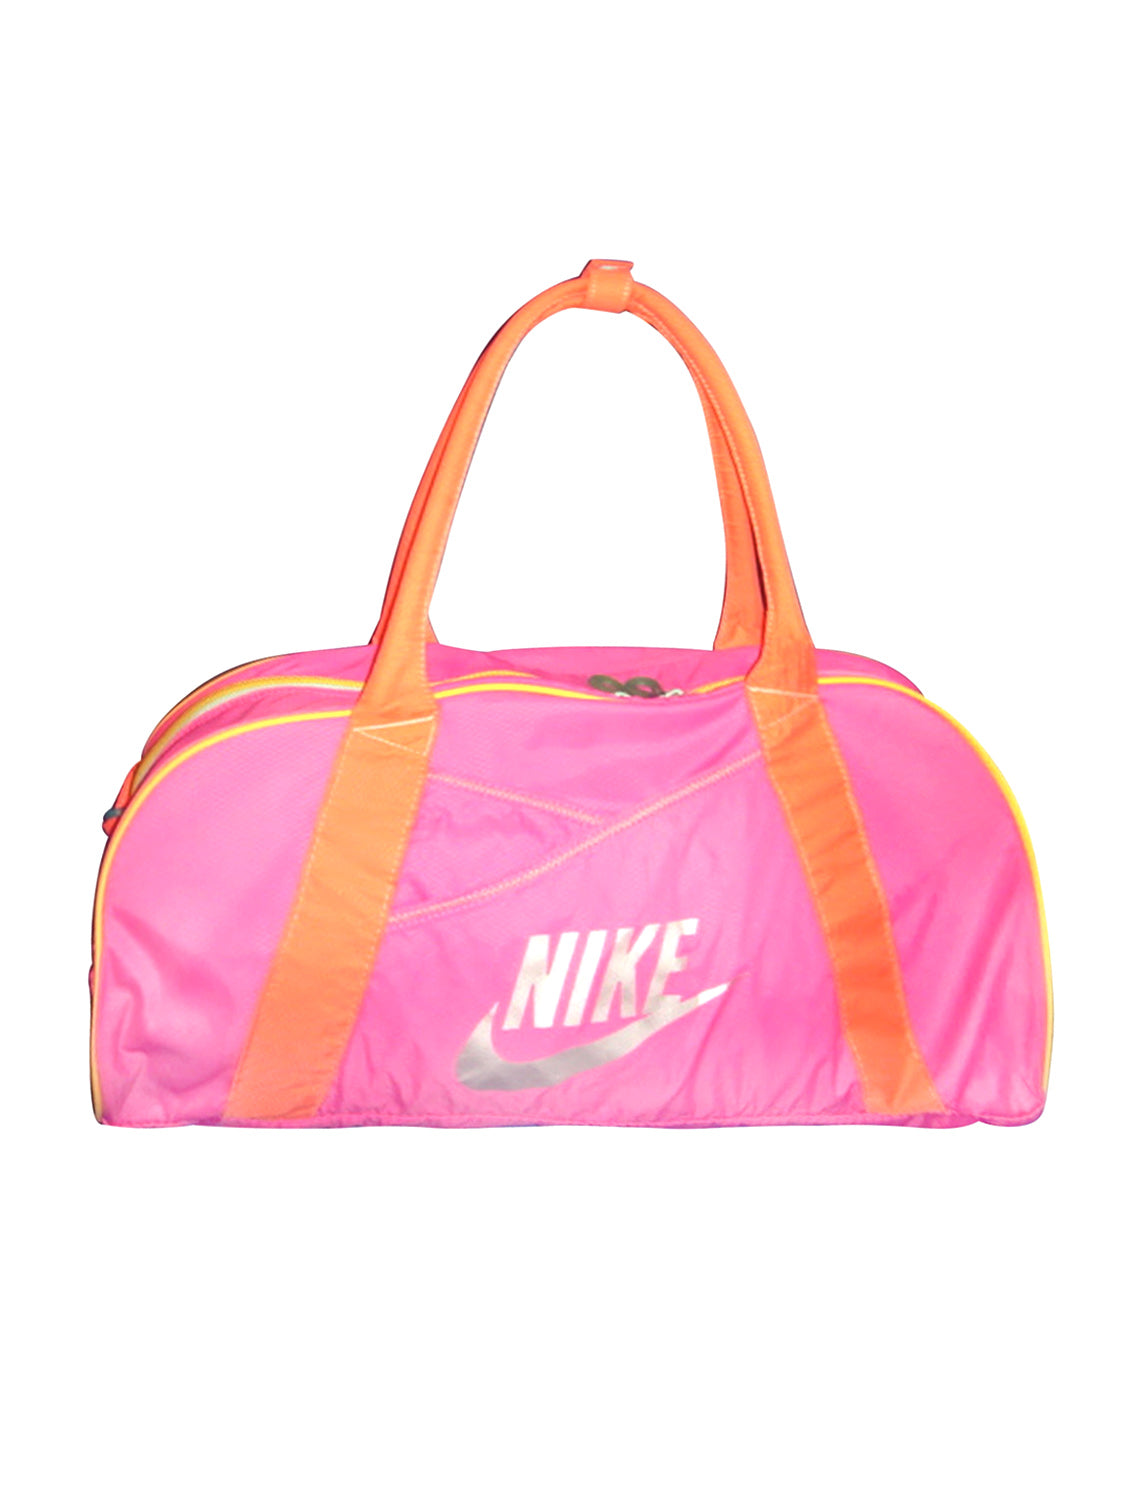 Handbag Nike Pink in Cotton - 24925981